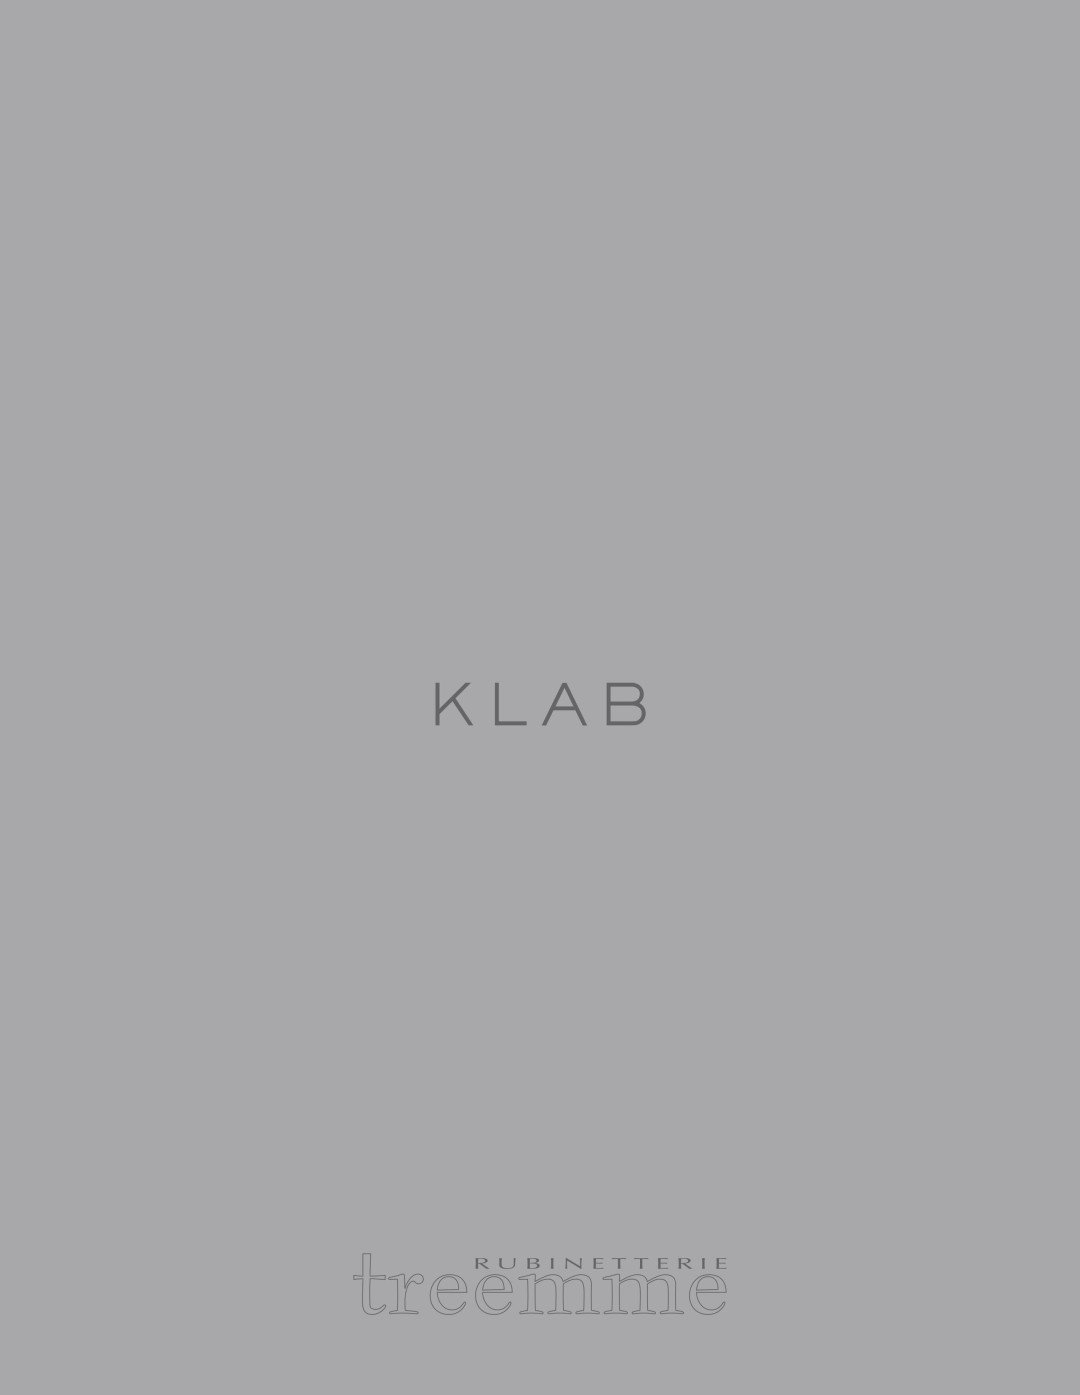 Klab